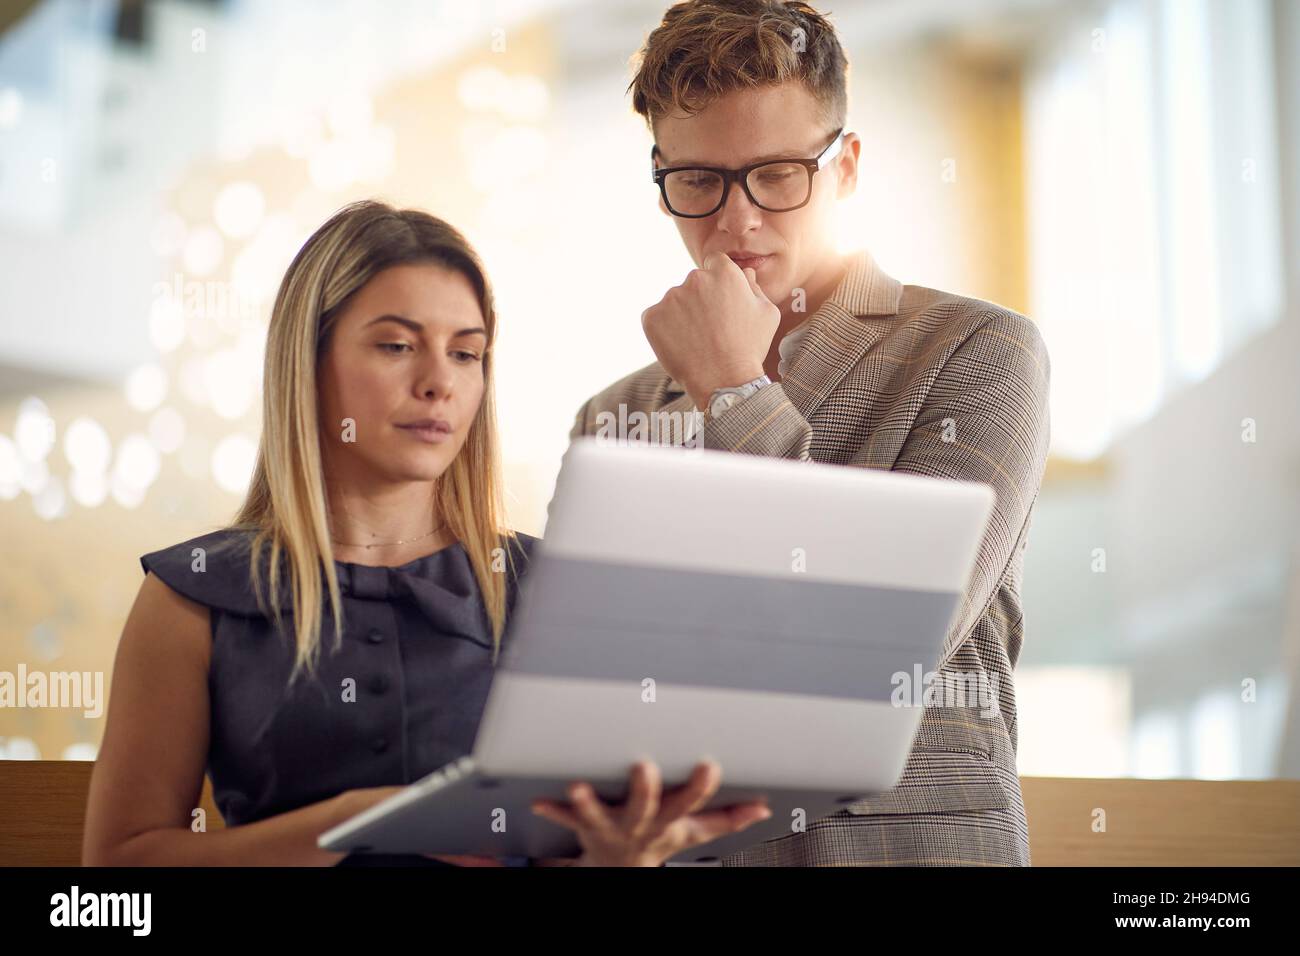 Une jeune femme d'affaires et son jeune collègue masculin se tenant dans le couloir et regardant un contenu d'ordinateur portable dans une atmosphère agréable.Affaires, personnes, c Banque D'Images